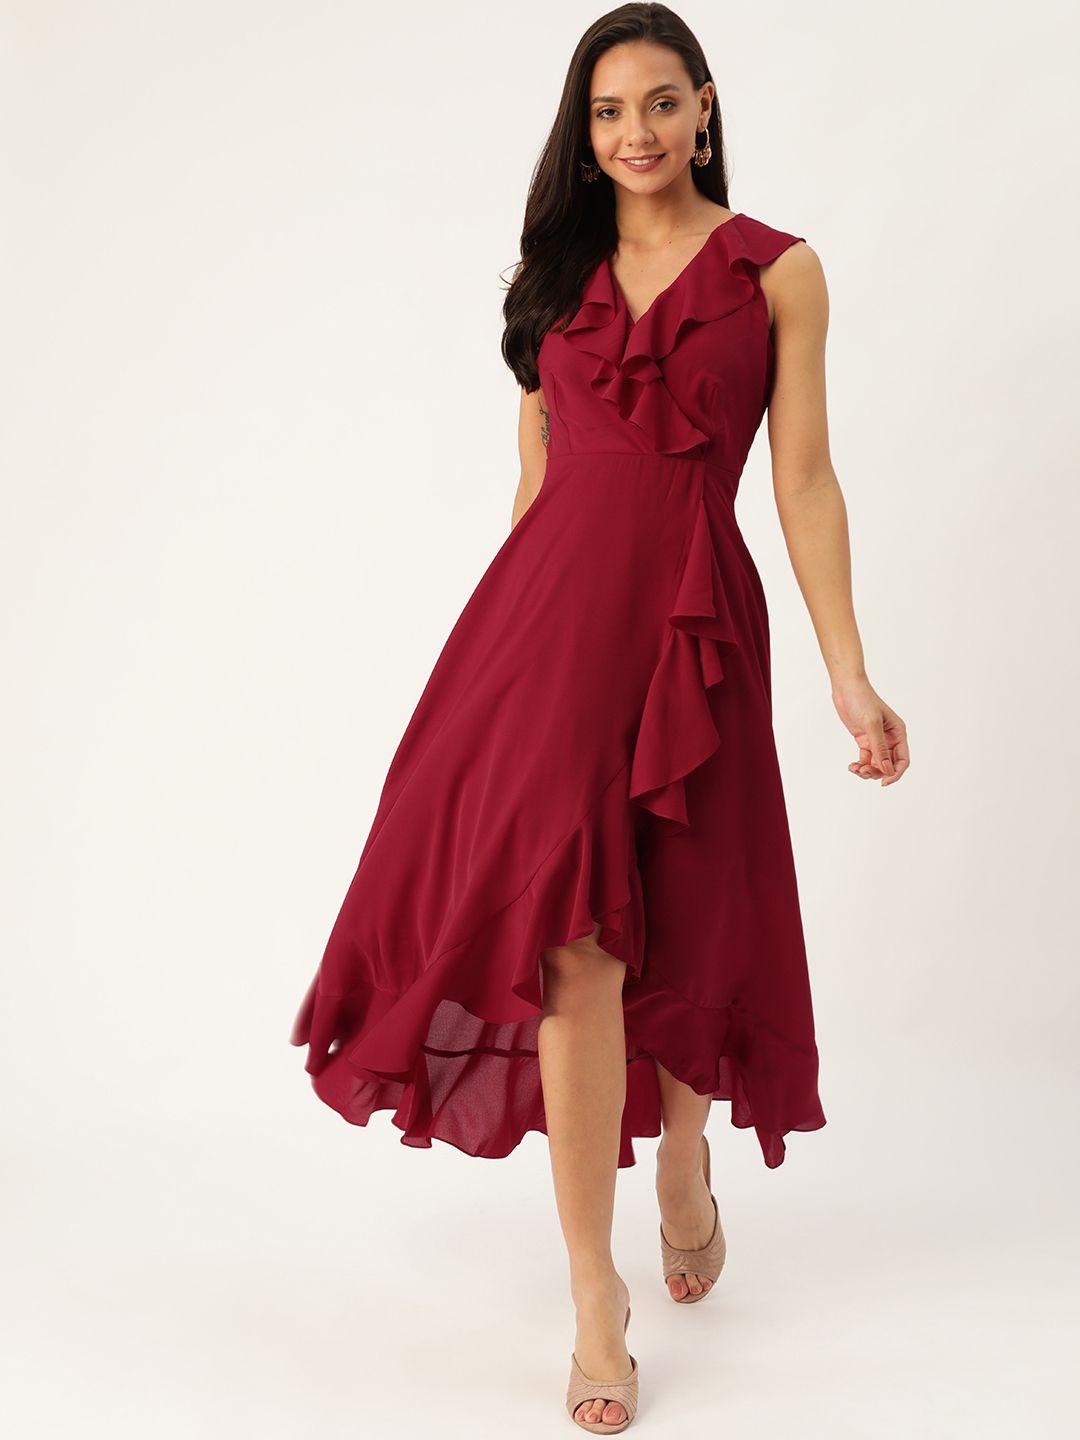 20dresses women maroon solid wrap dress